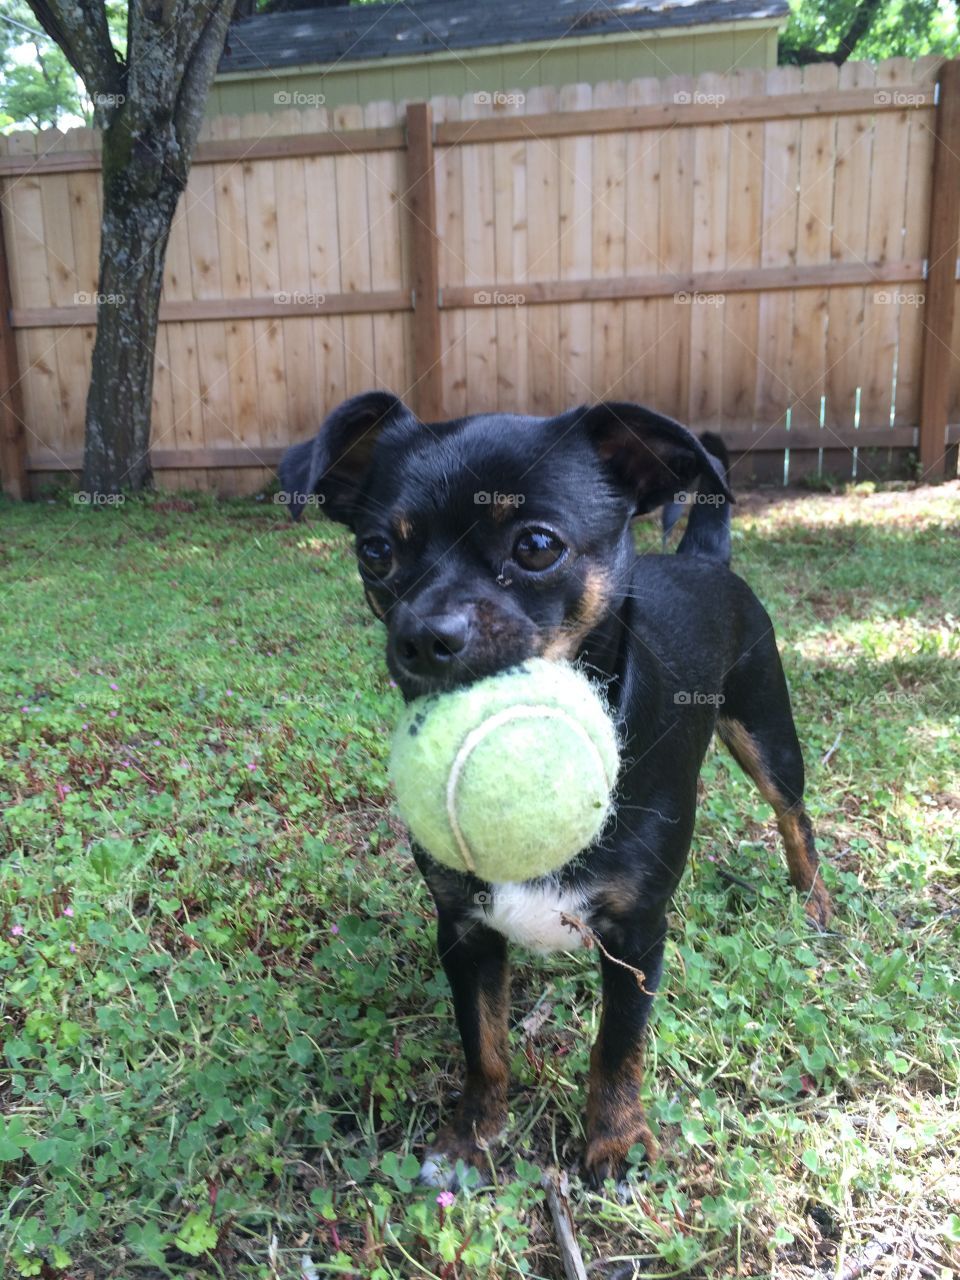 Small dog, big ball